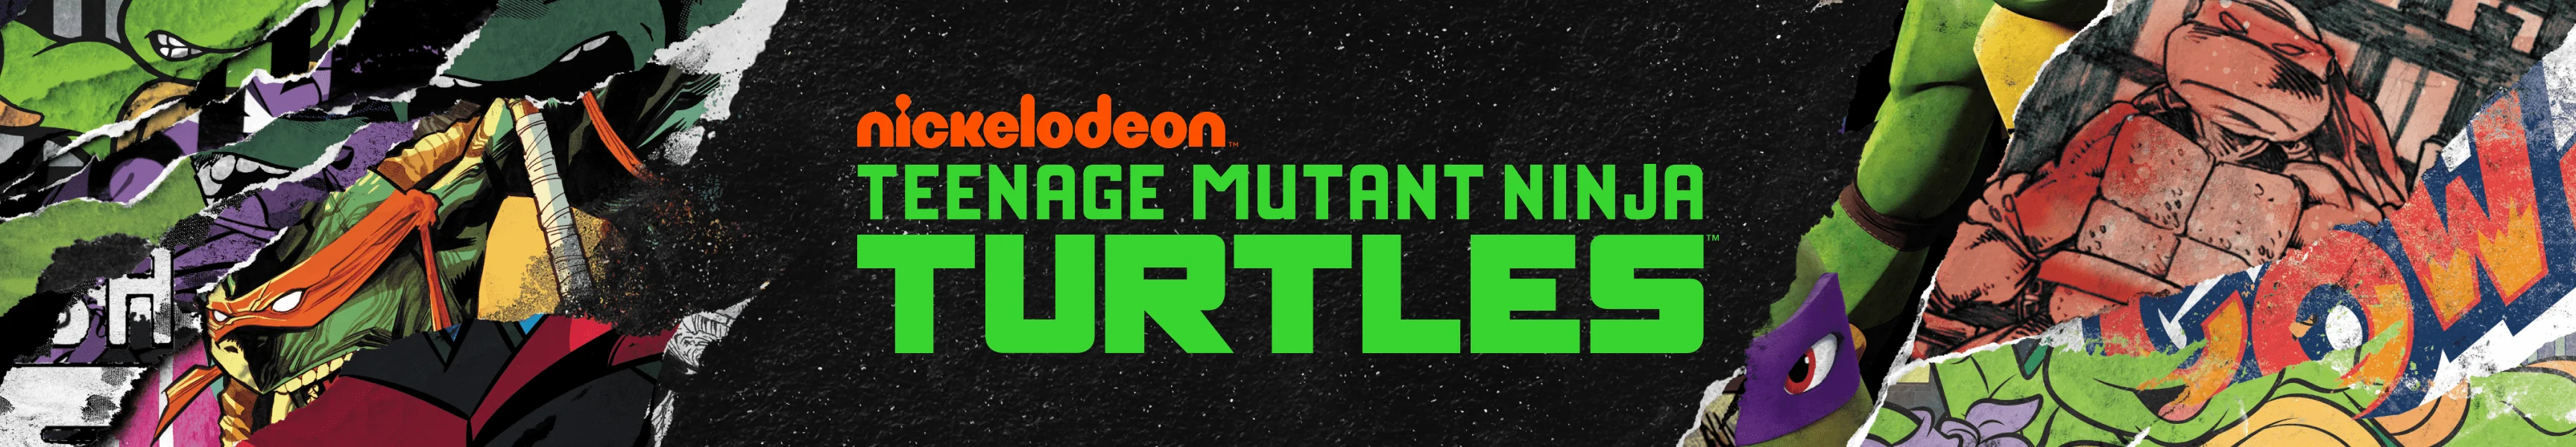 Teenage Mutant Ninja Turtles Halloween